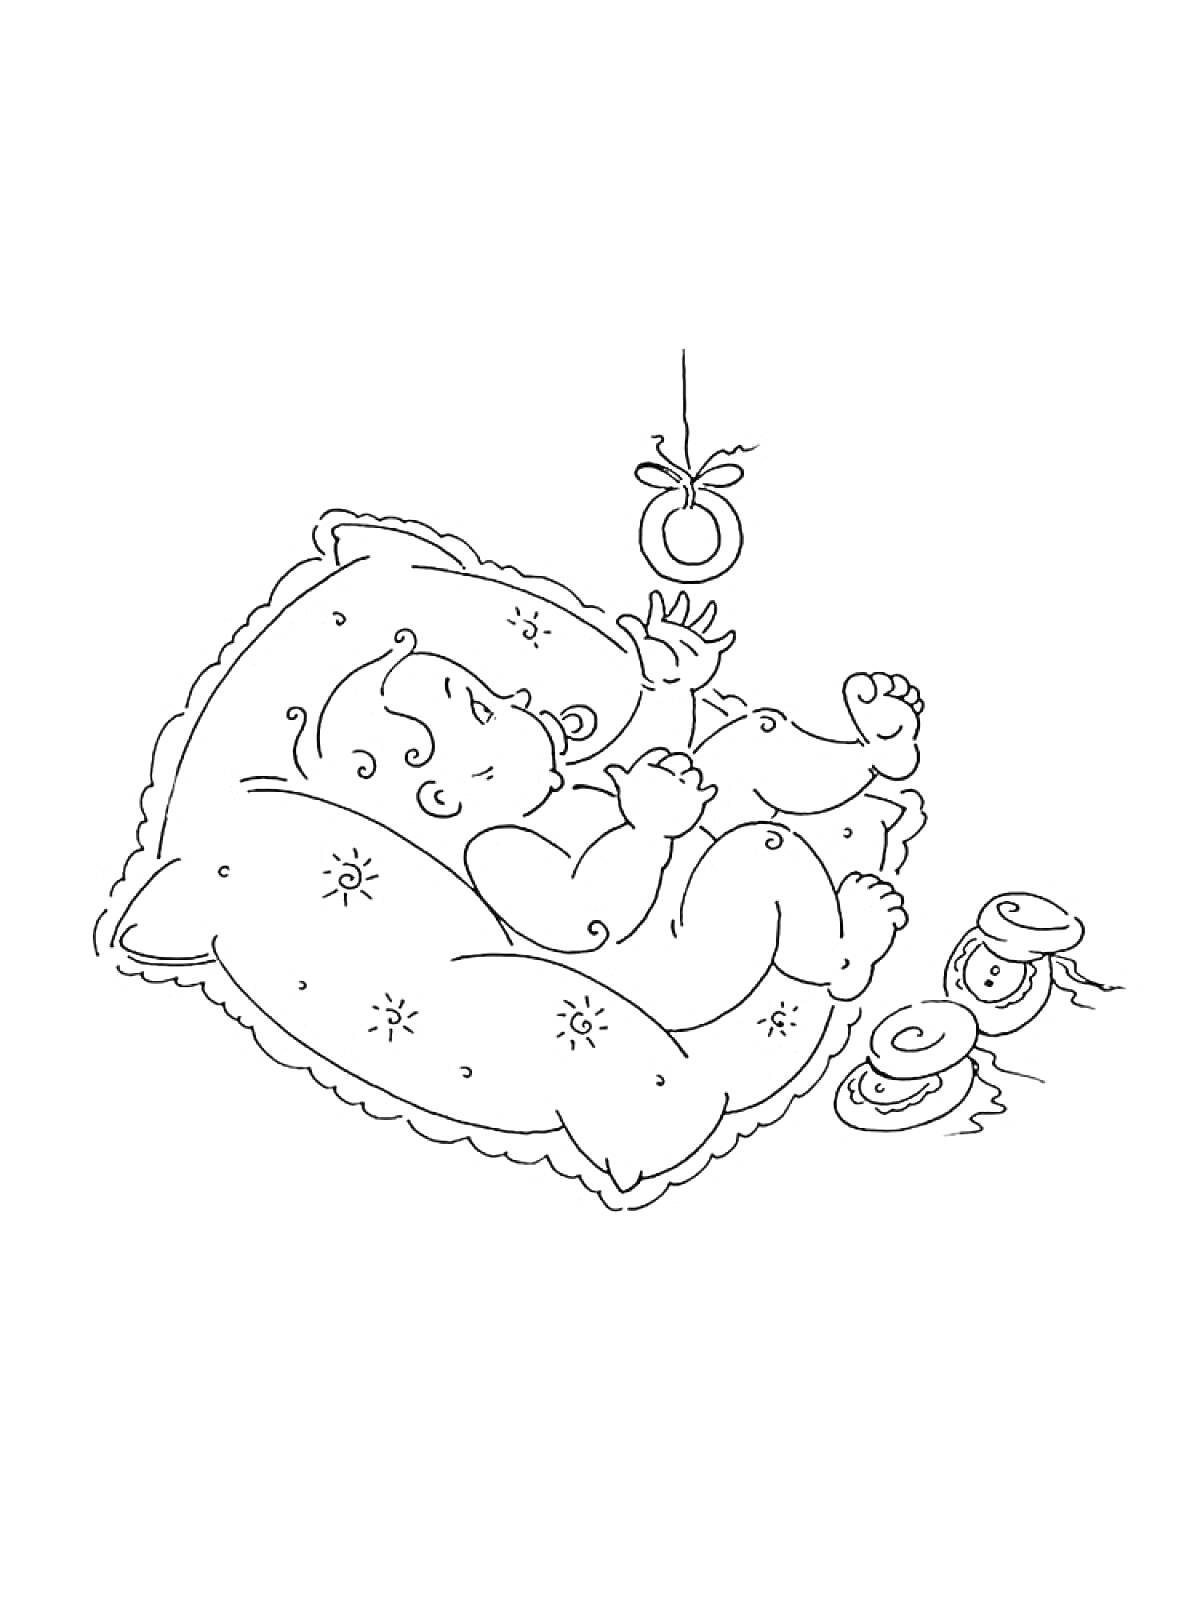 Раскраска Младенец на подушке с погремушкой и ботиночками